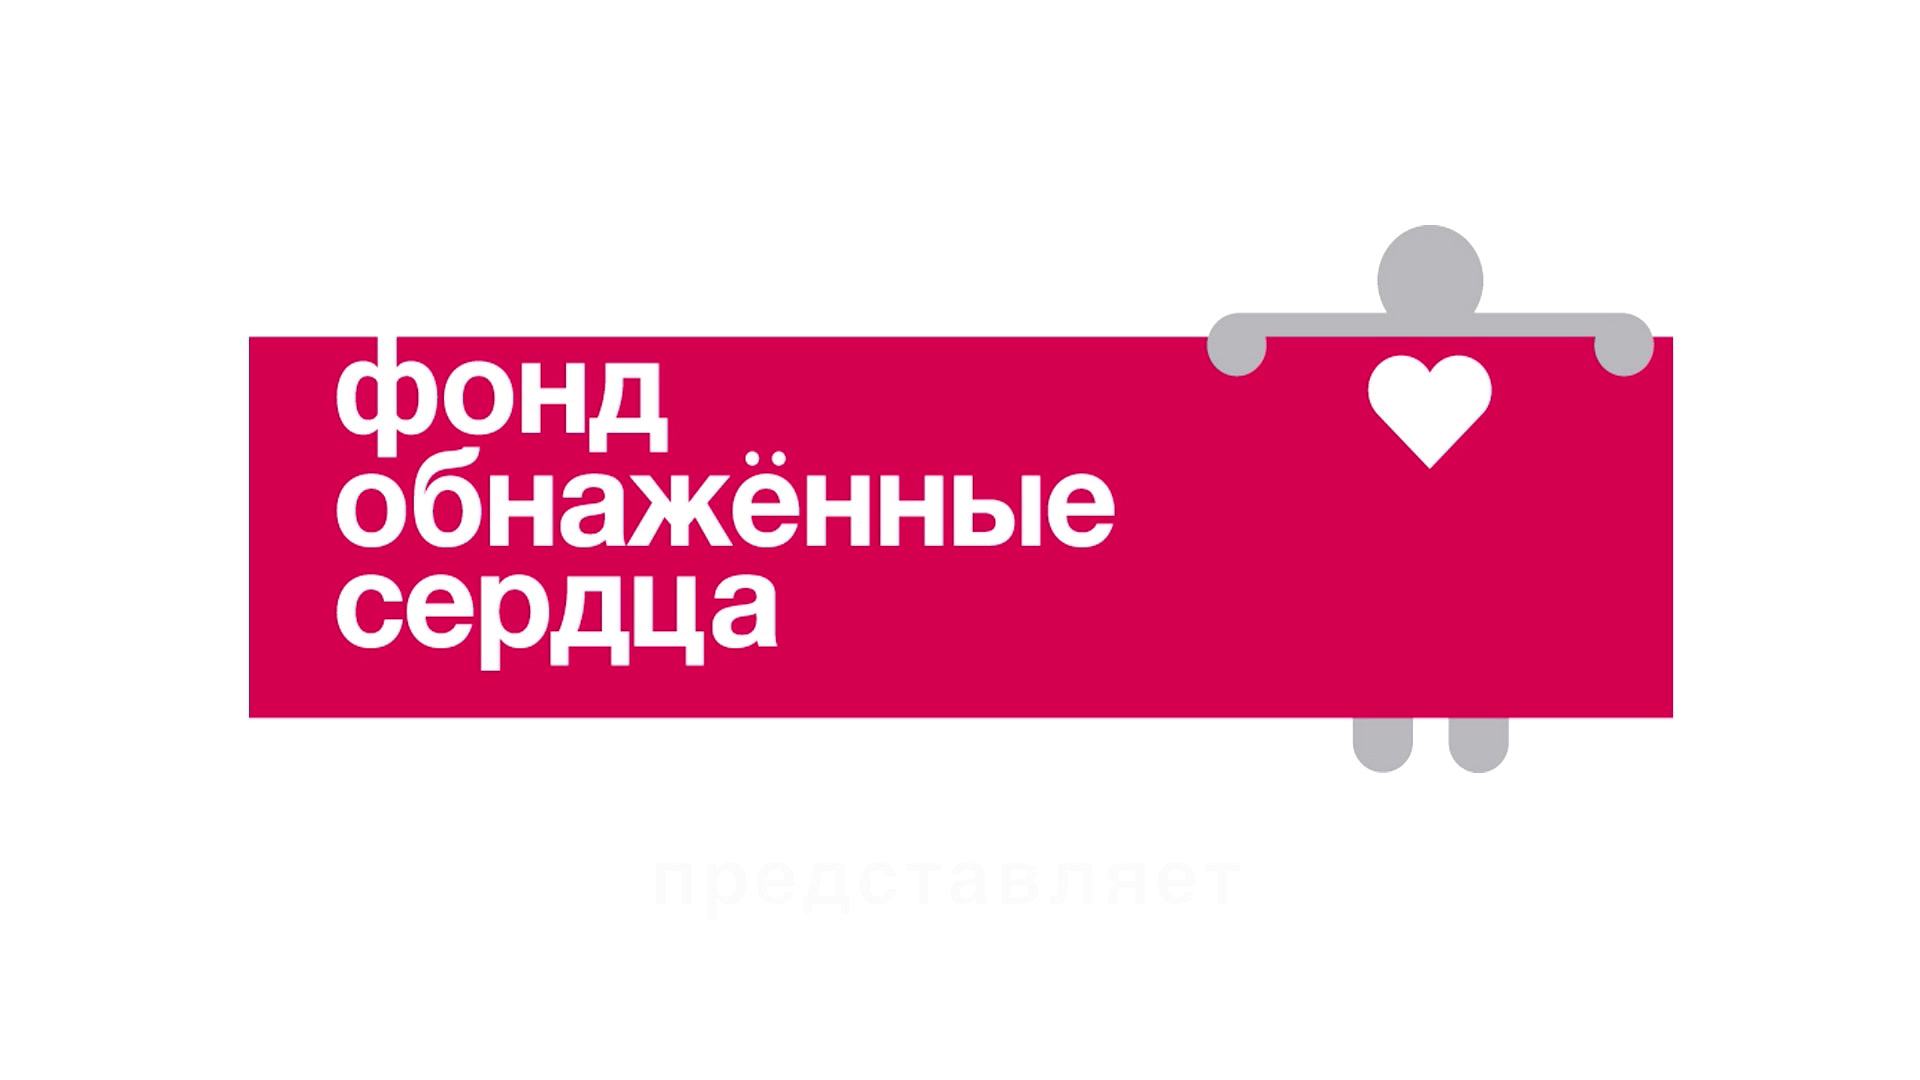 Российская Модель Создала Фонд Обнаженные Сердца